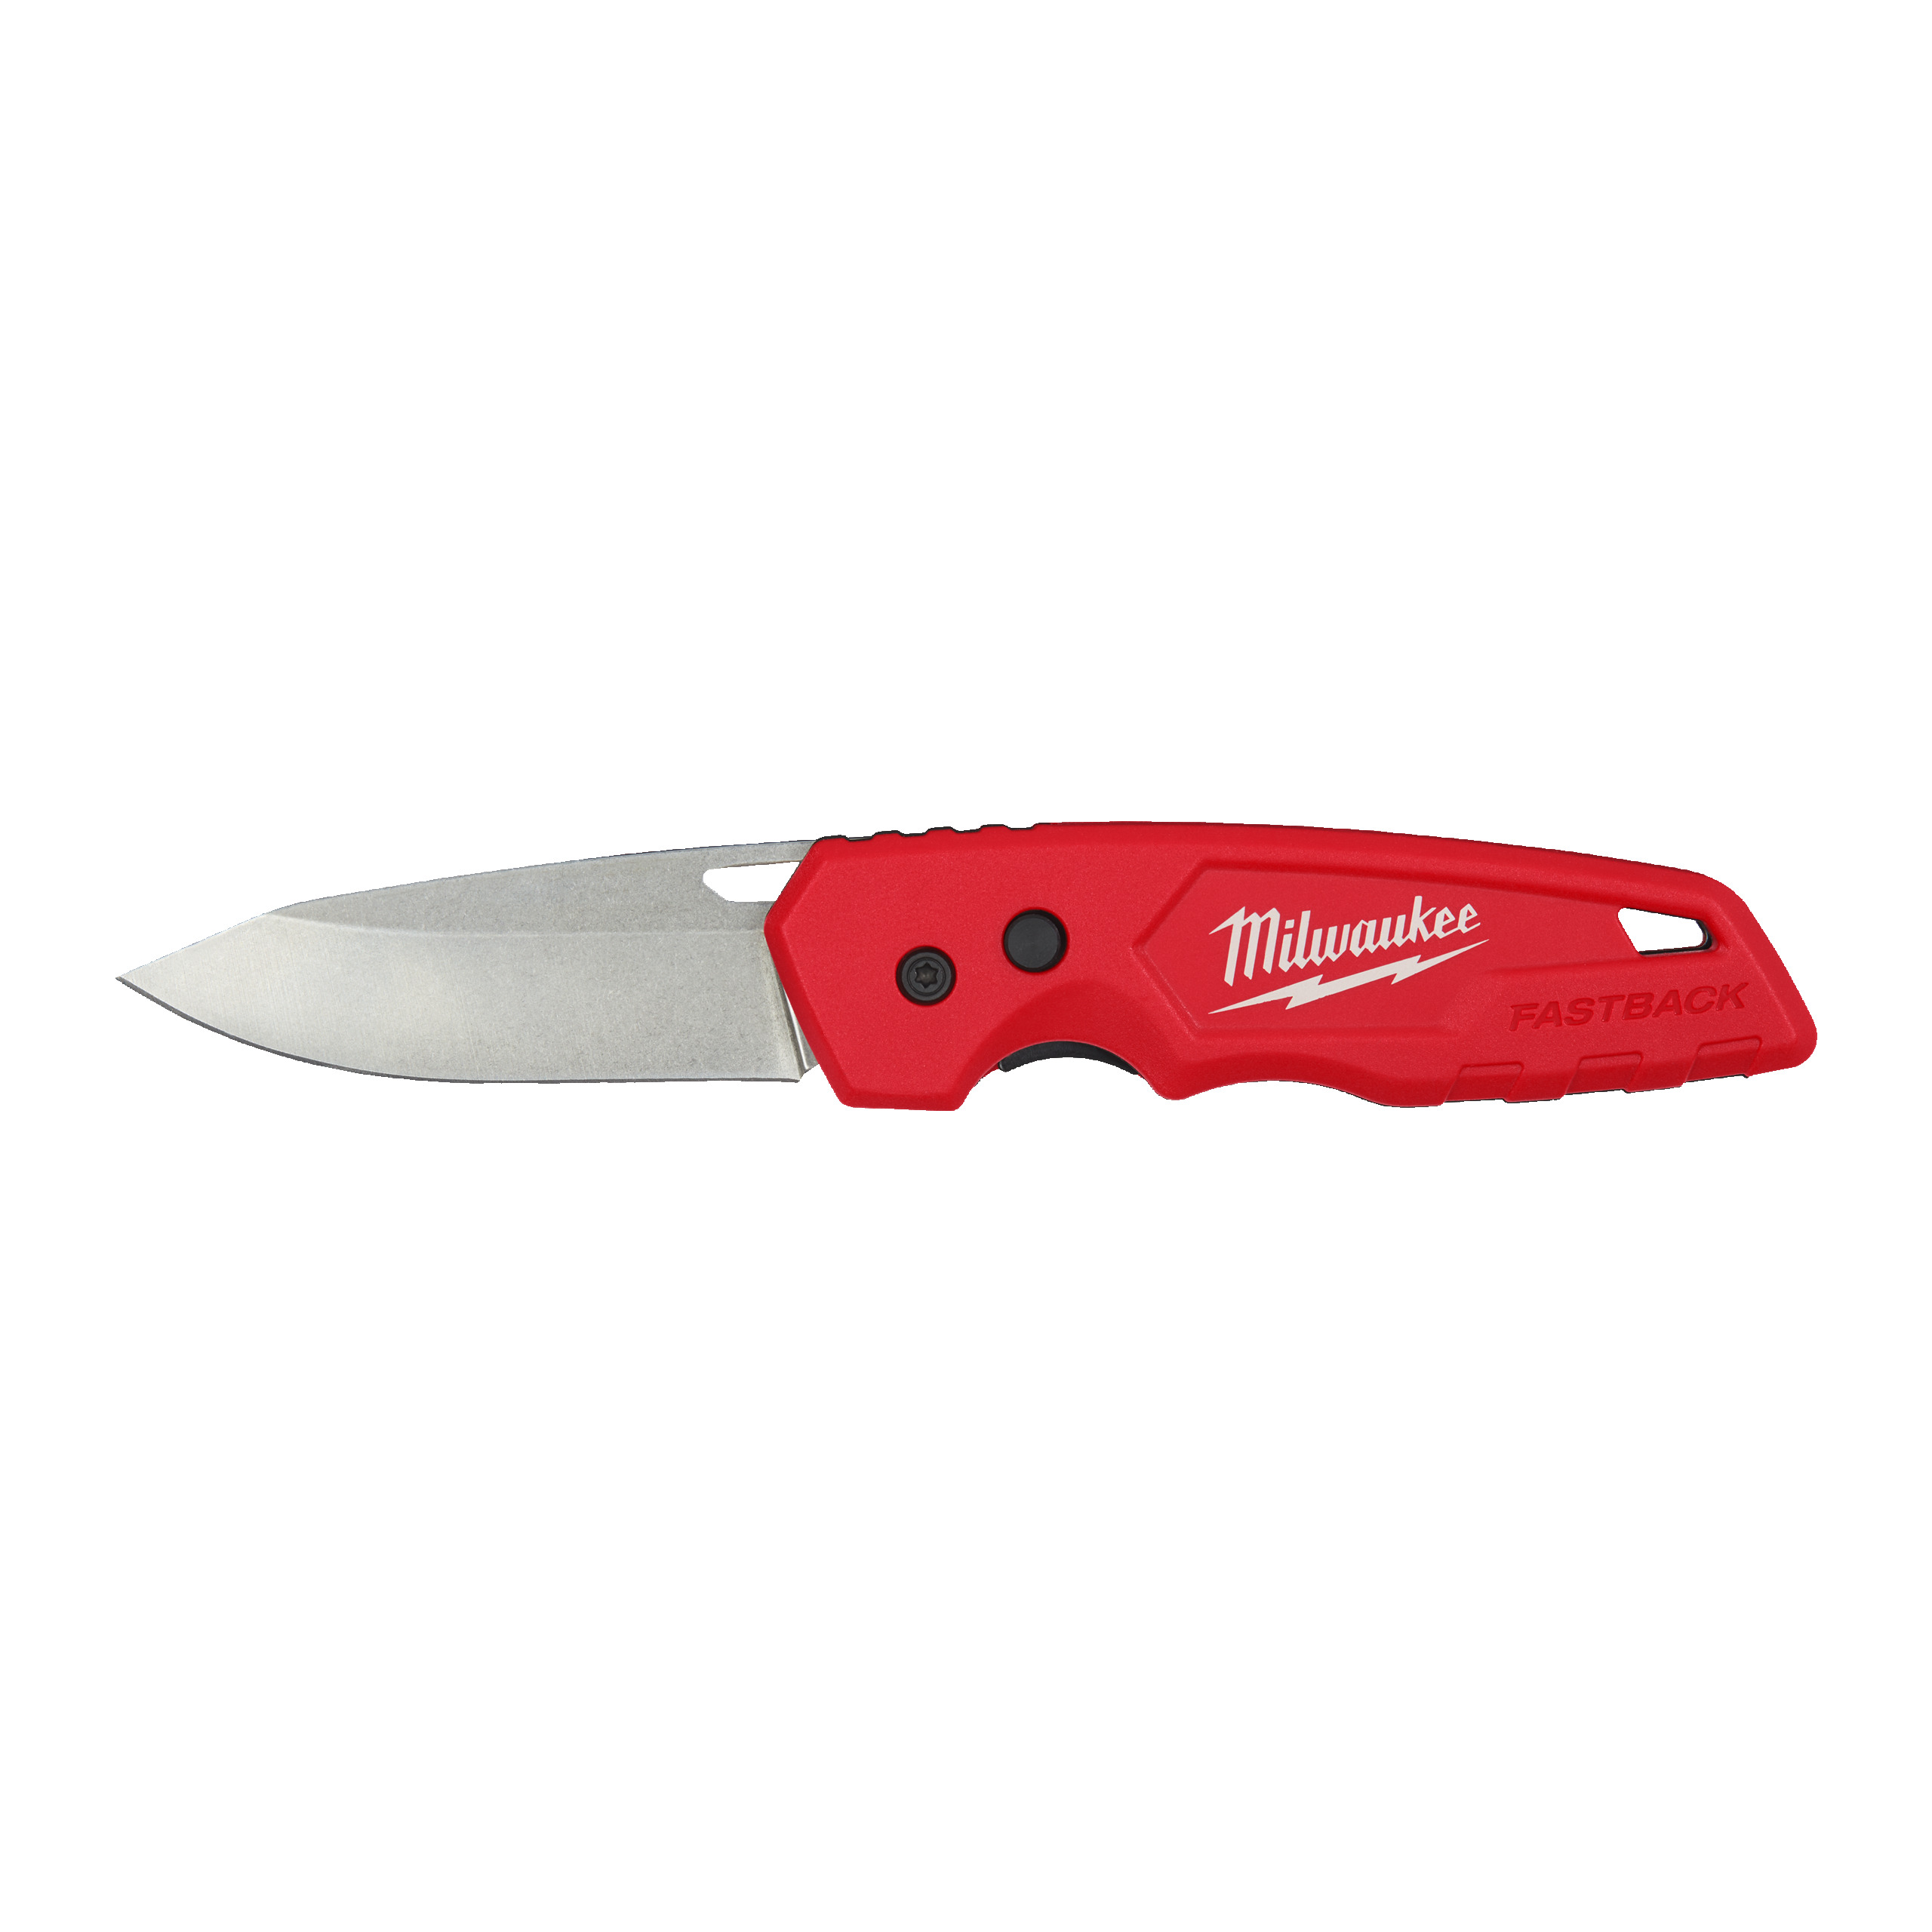 MILWAUKEE 48221990 FASTBACK zavírací nůž